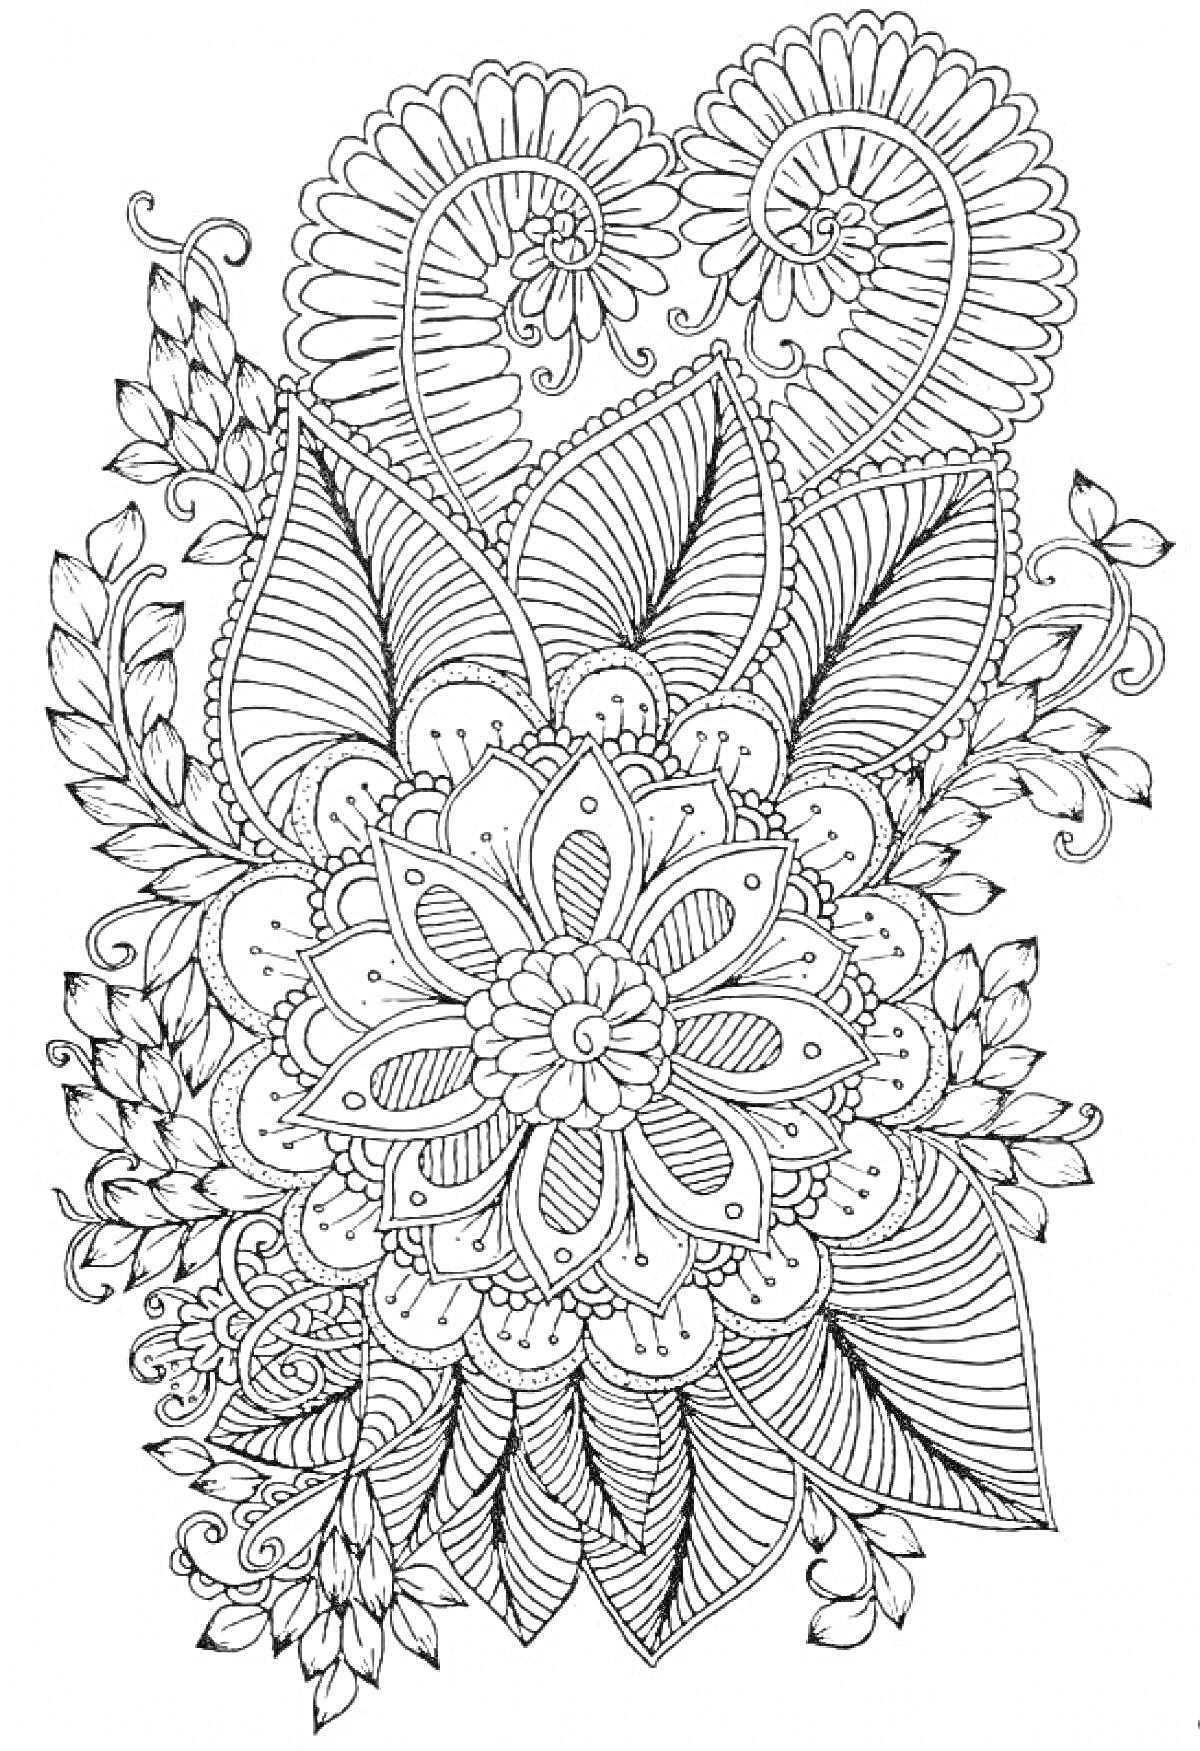 Раскраска Антистресс раскраска с цветами, листьями и абстрактными узорами